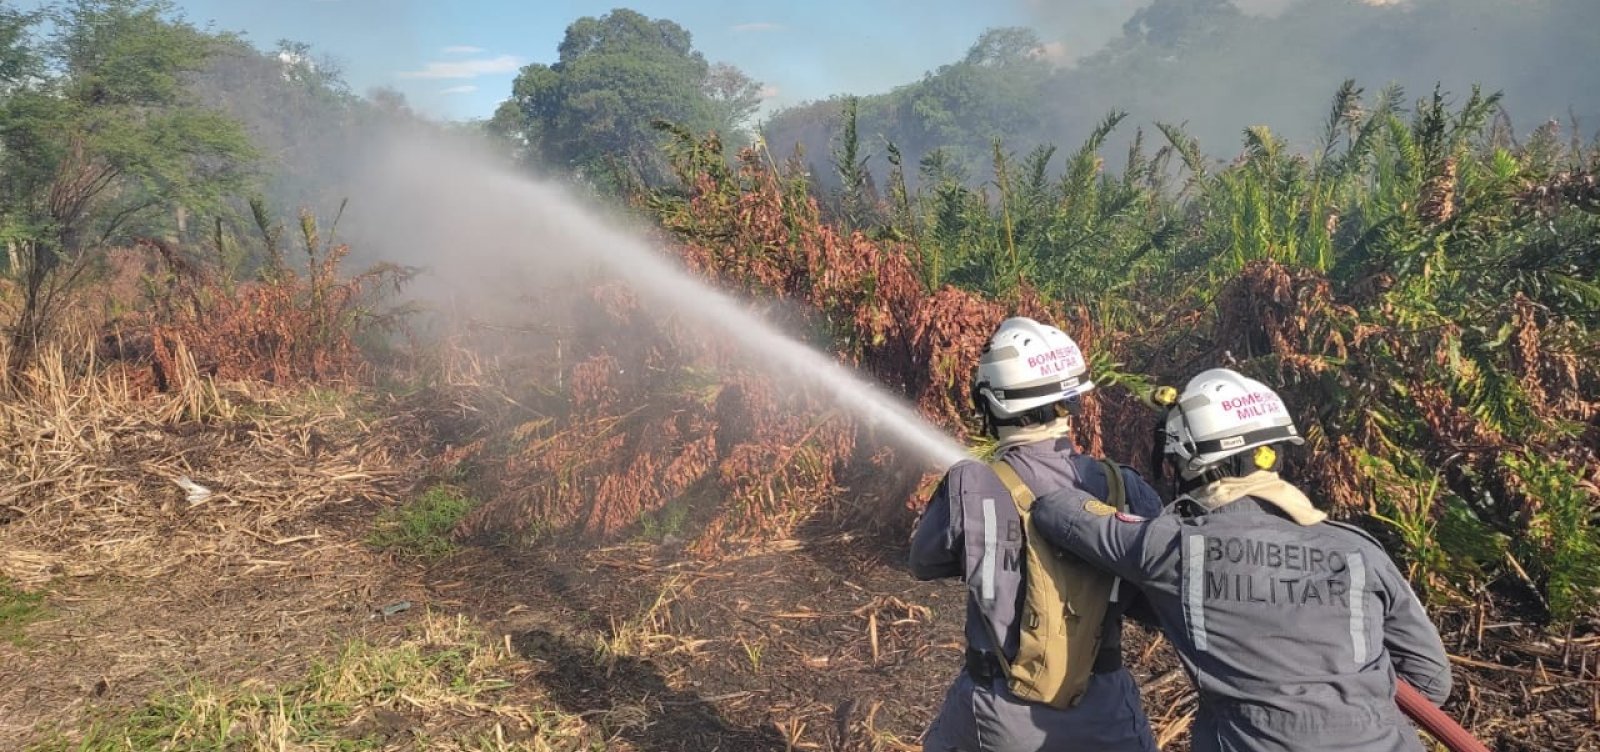 Paulo Afonso: Bombeiros apagam incêndio em área da caatinga após moradores atearem fogo em madeira